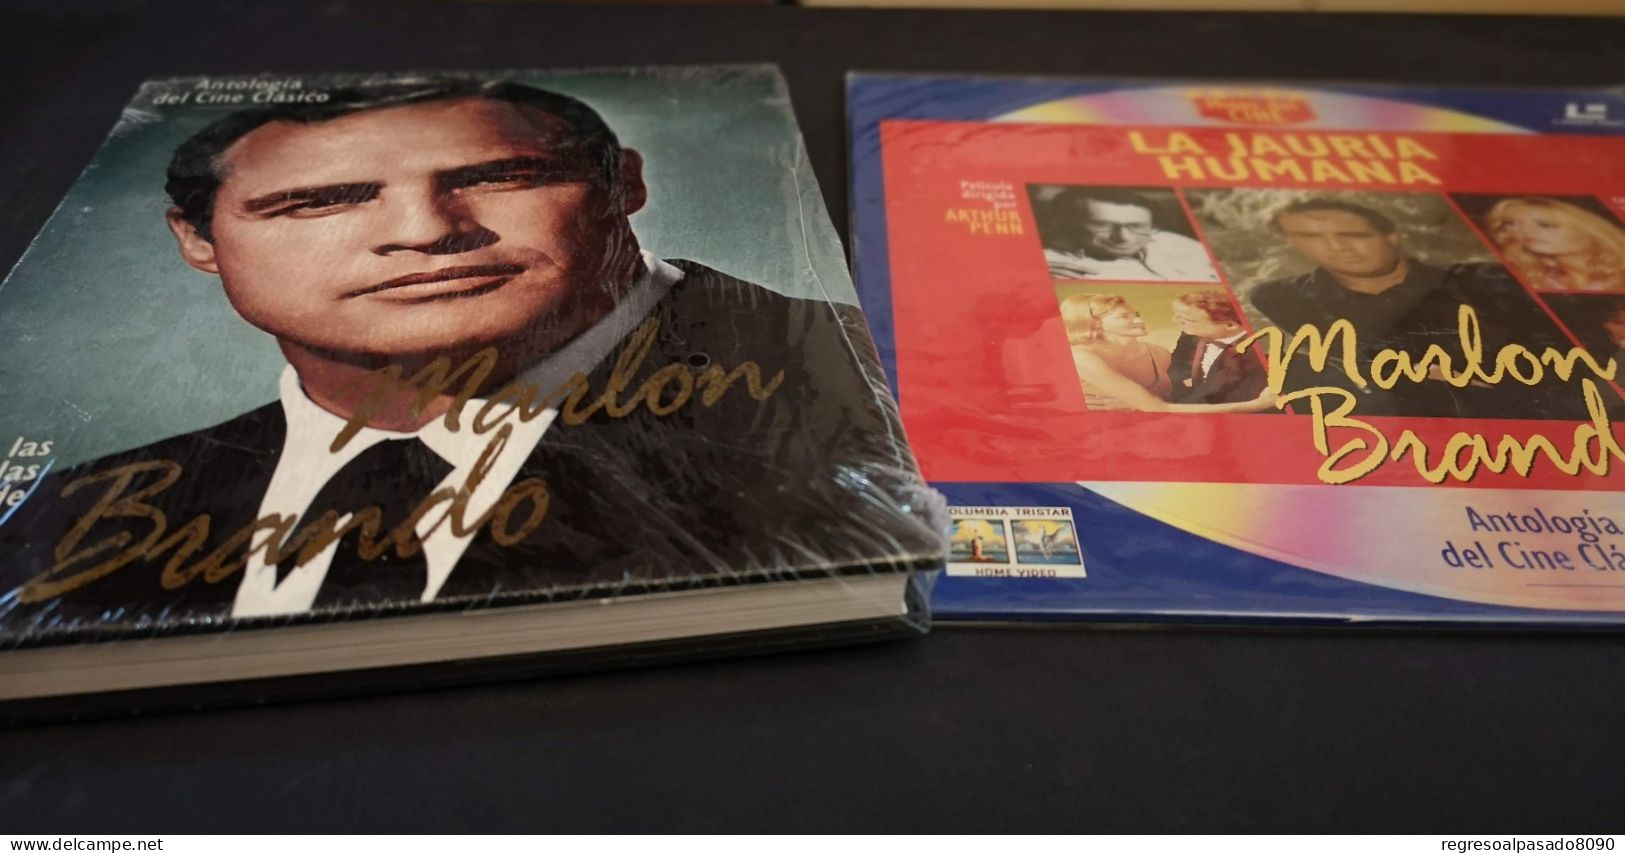 Marlon Brando Libro Y Película Laser Disc Laserdisc La Jauria Humana. Mitos Del Cine Planeta Años 90 - Clásicos